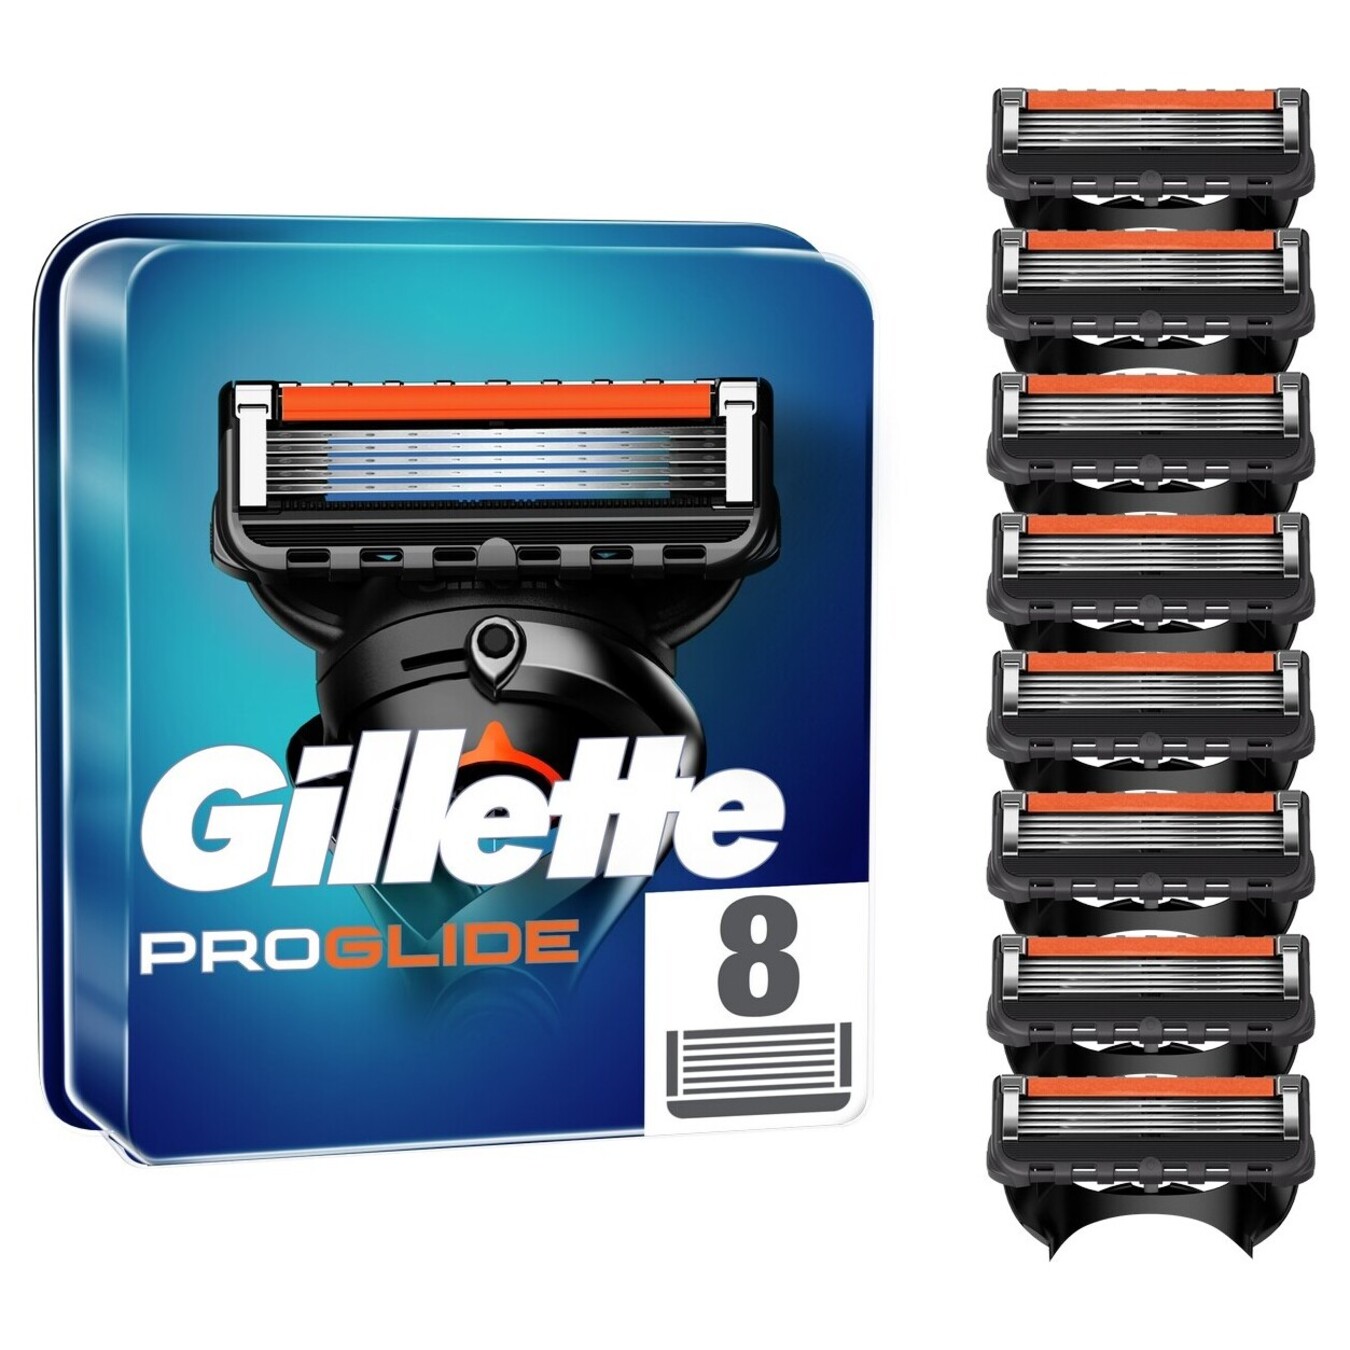 Cartridges for shaving Gillette Fusion ProGlide Power replaceable 8pcs 3